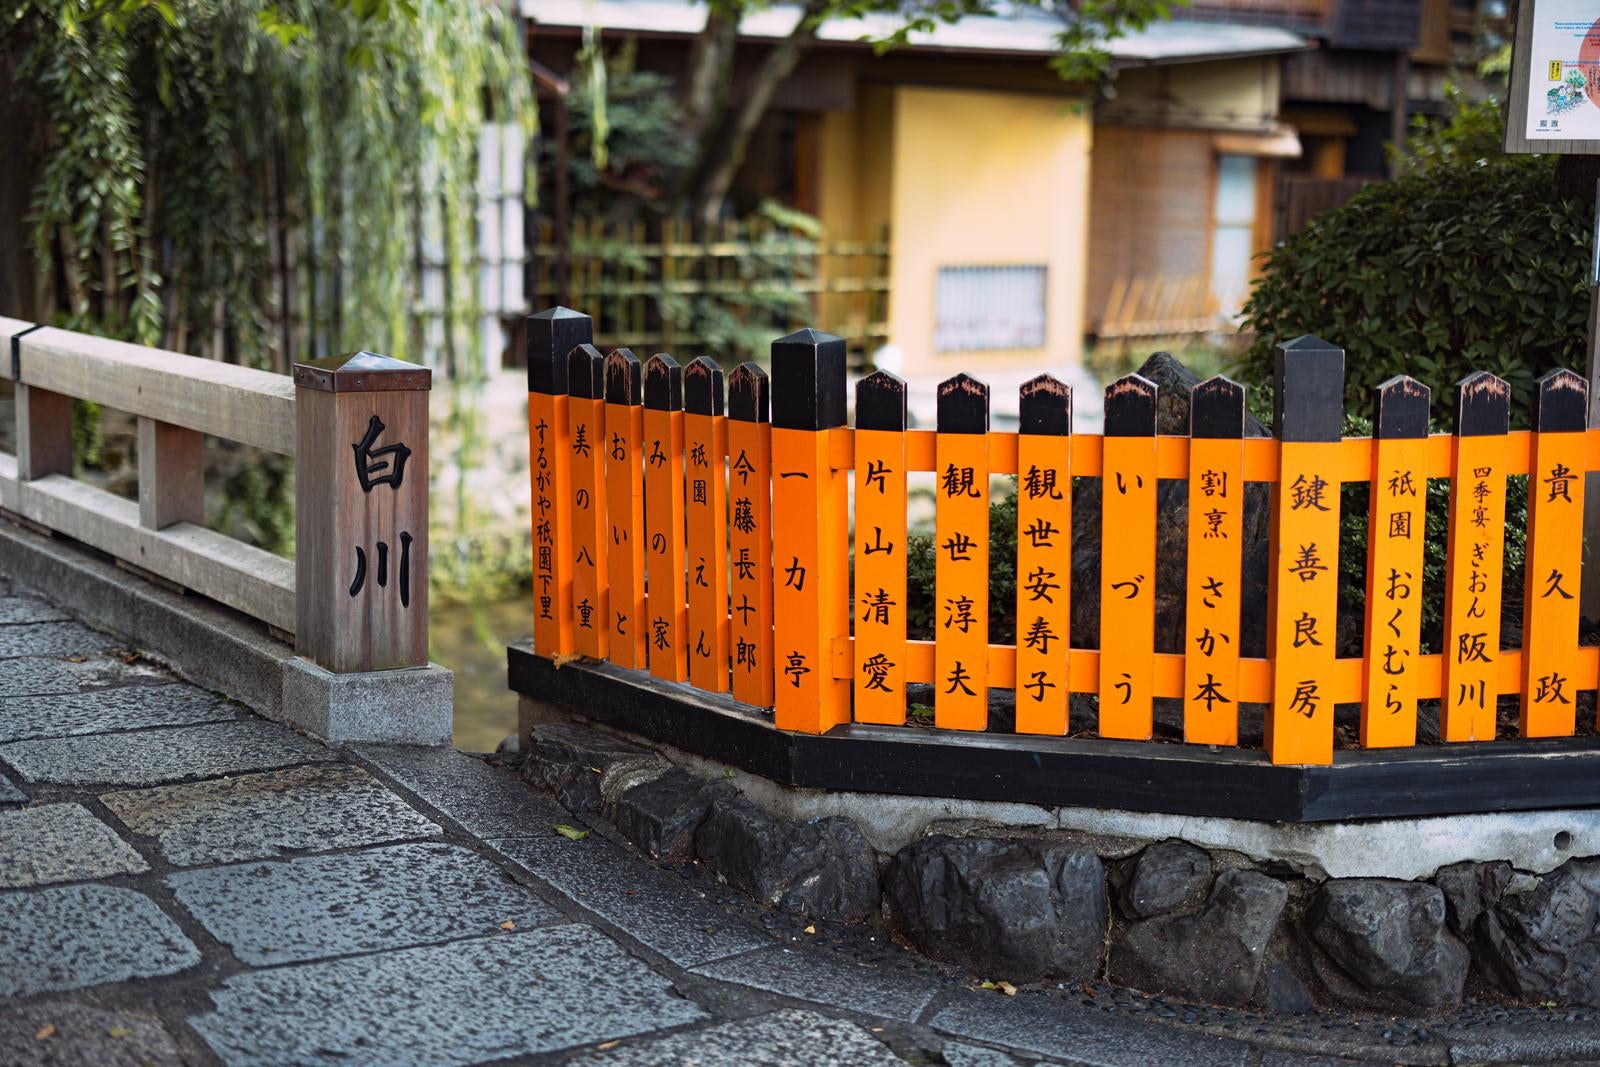 「祇園白川の名前が入った柵と巽橋」の写真